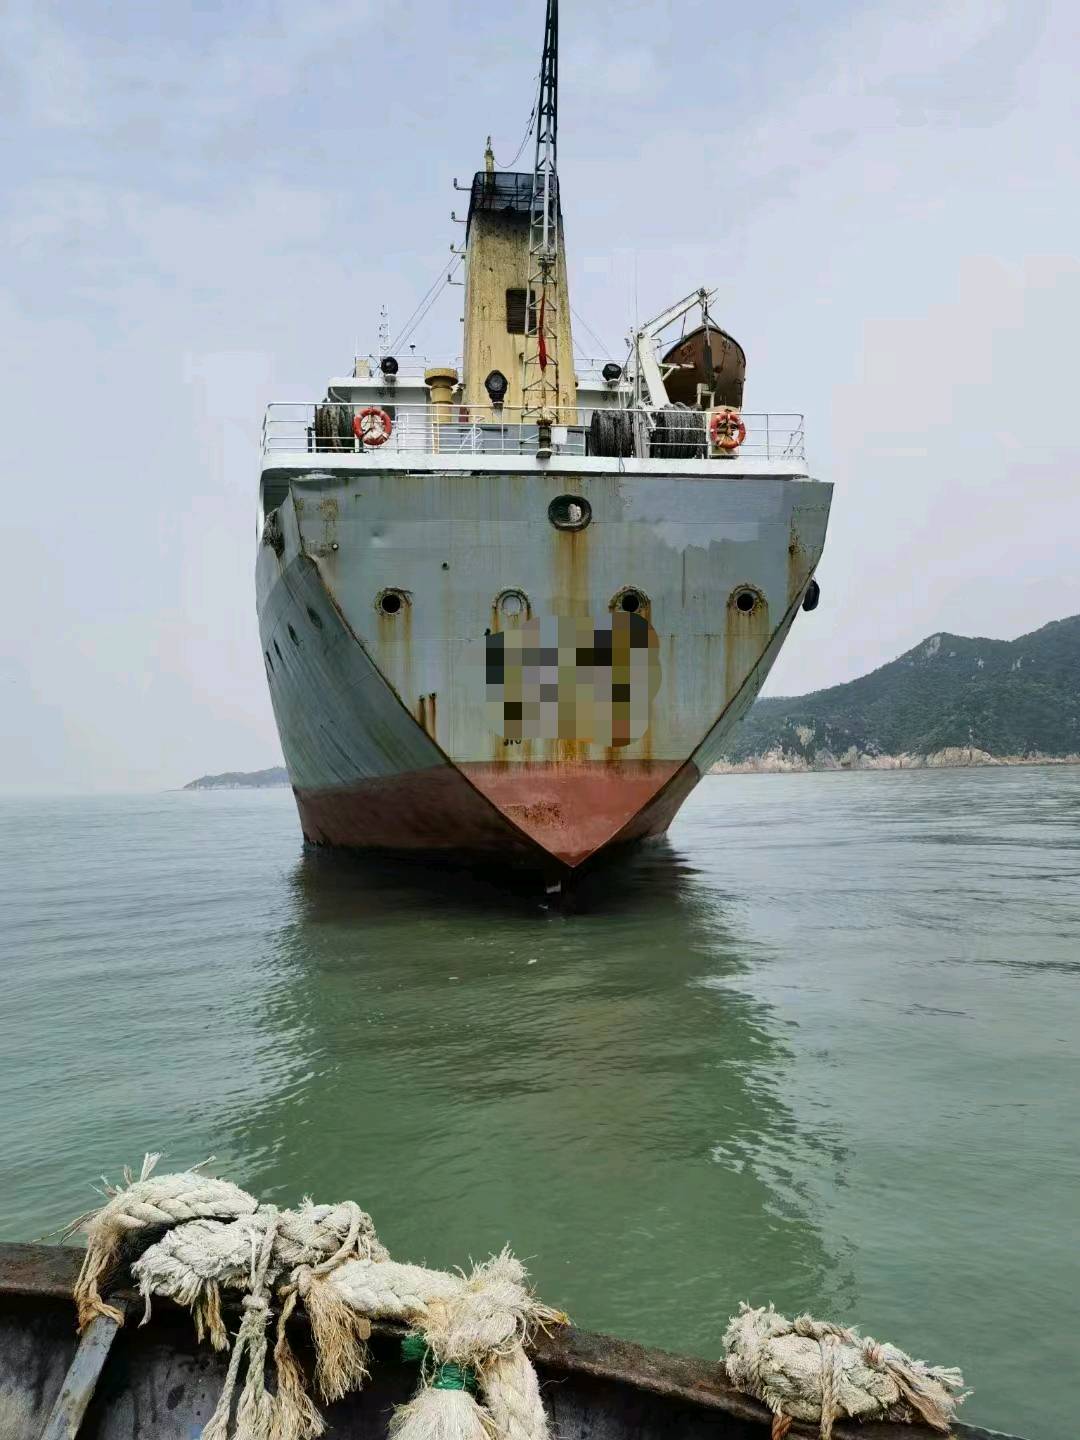 出售3400吨油船